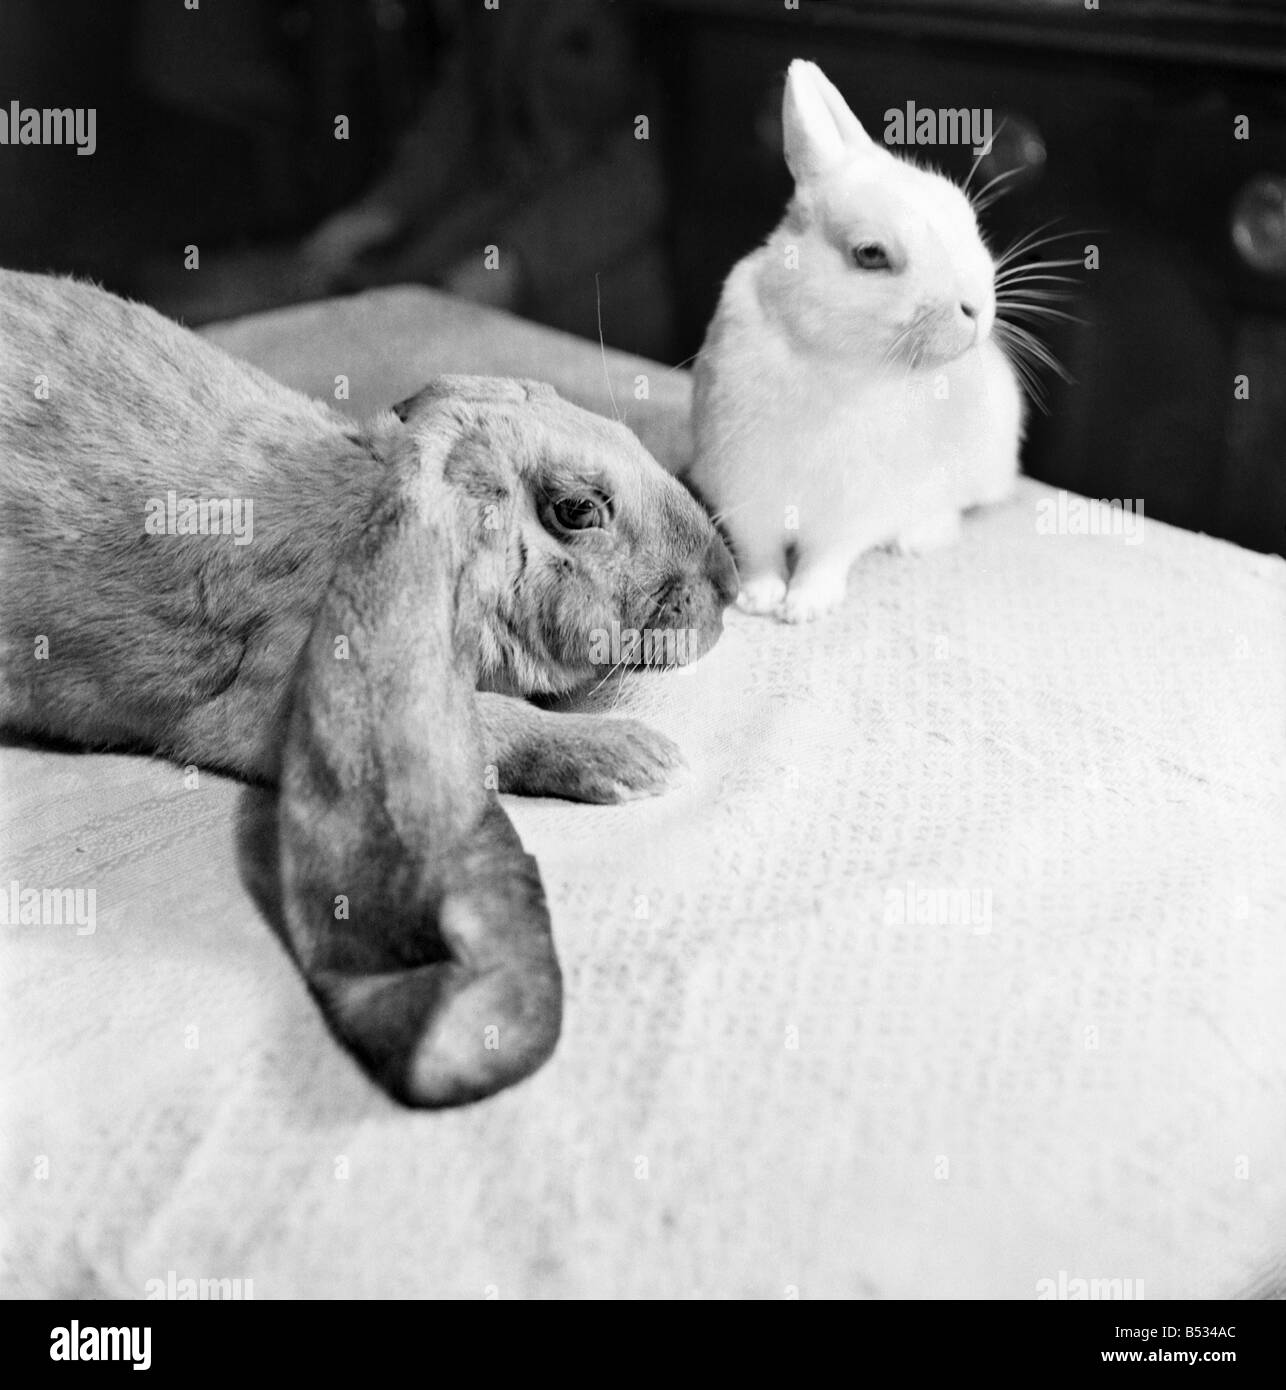 Orejas grandes lo tiene todo envuelto. Lop conejos orejudo "Goofy" y "Caprichoso Whoopy' en el sofá. De septiembre de 1952 C4546-001 Foto de stock